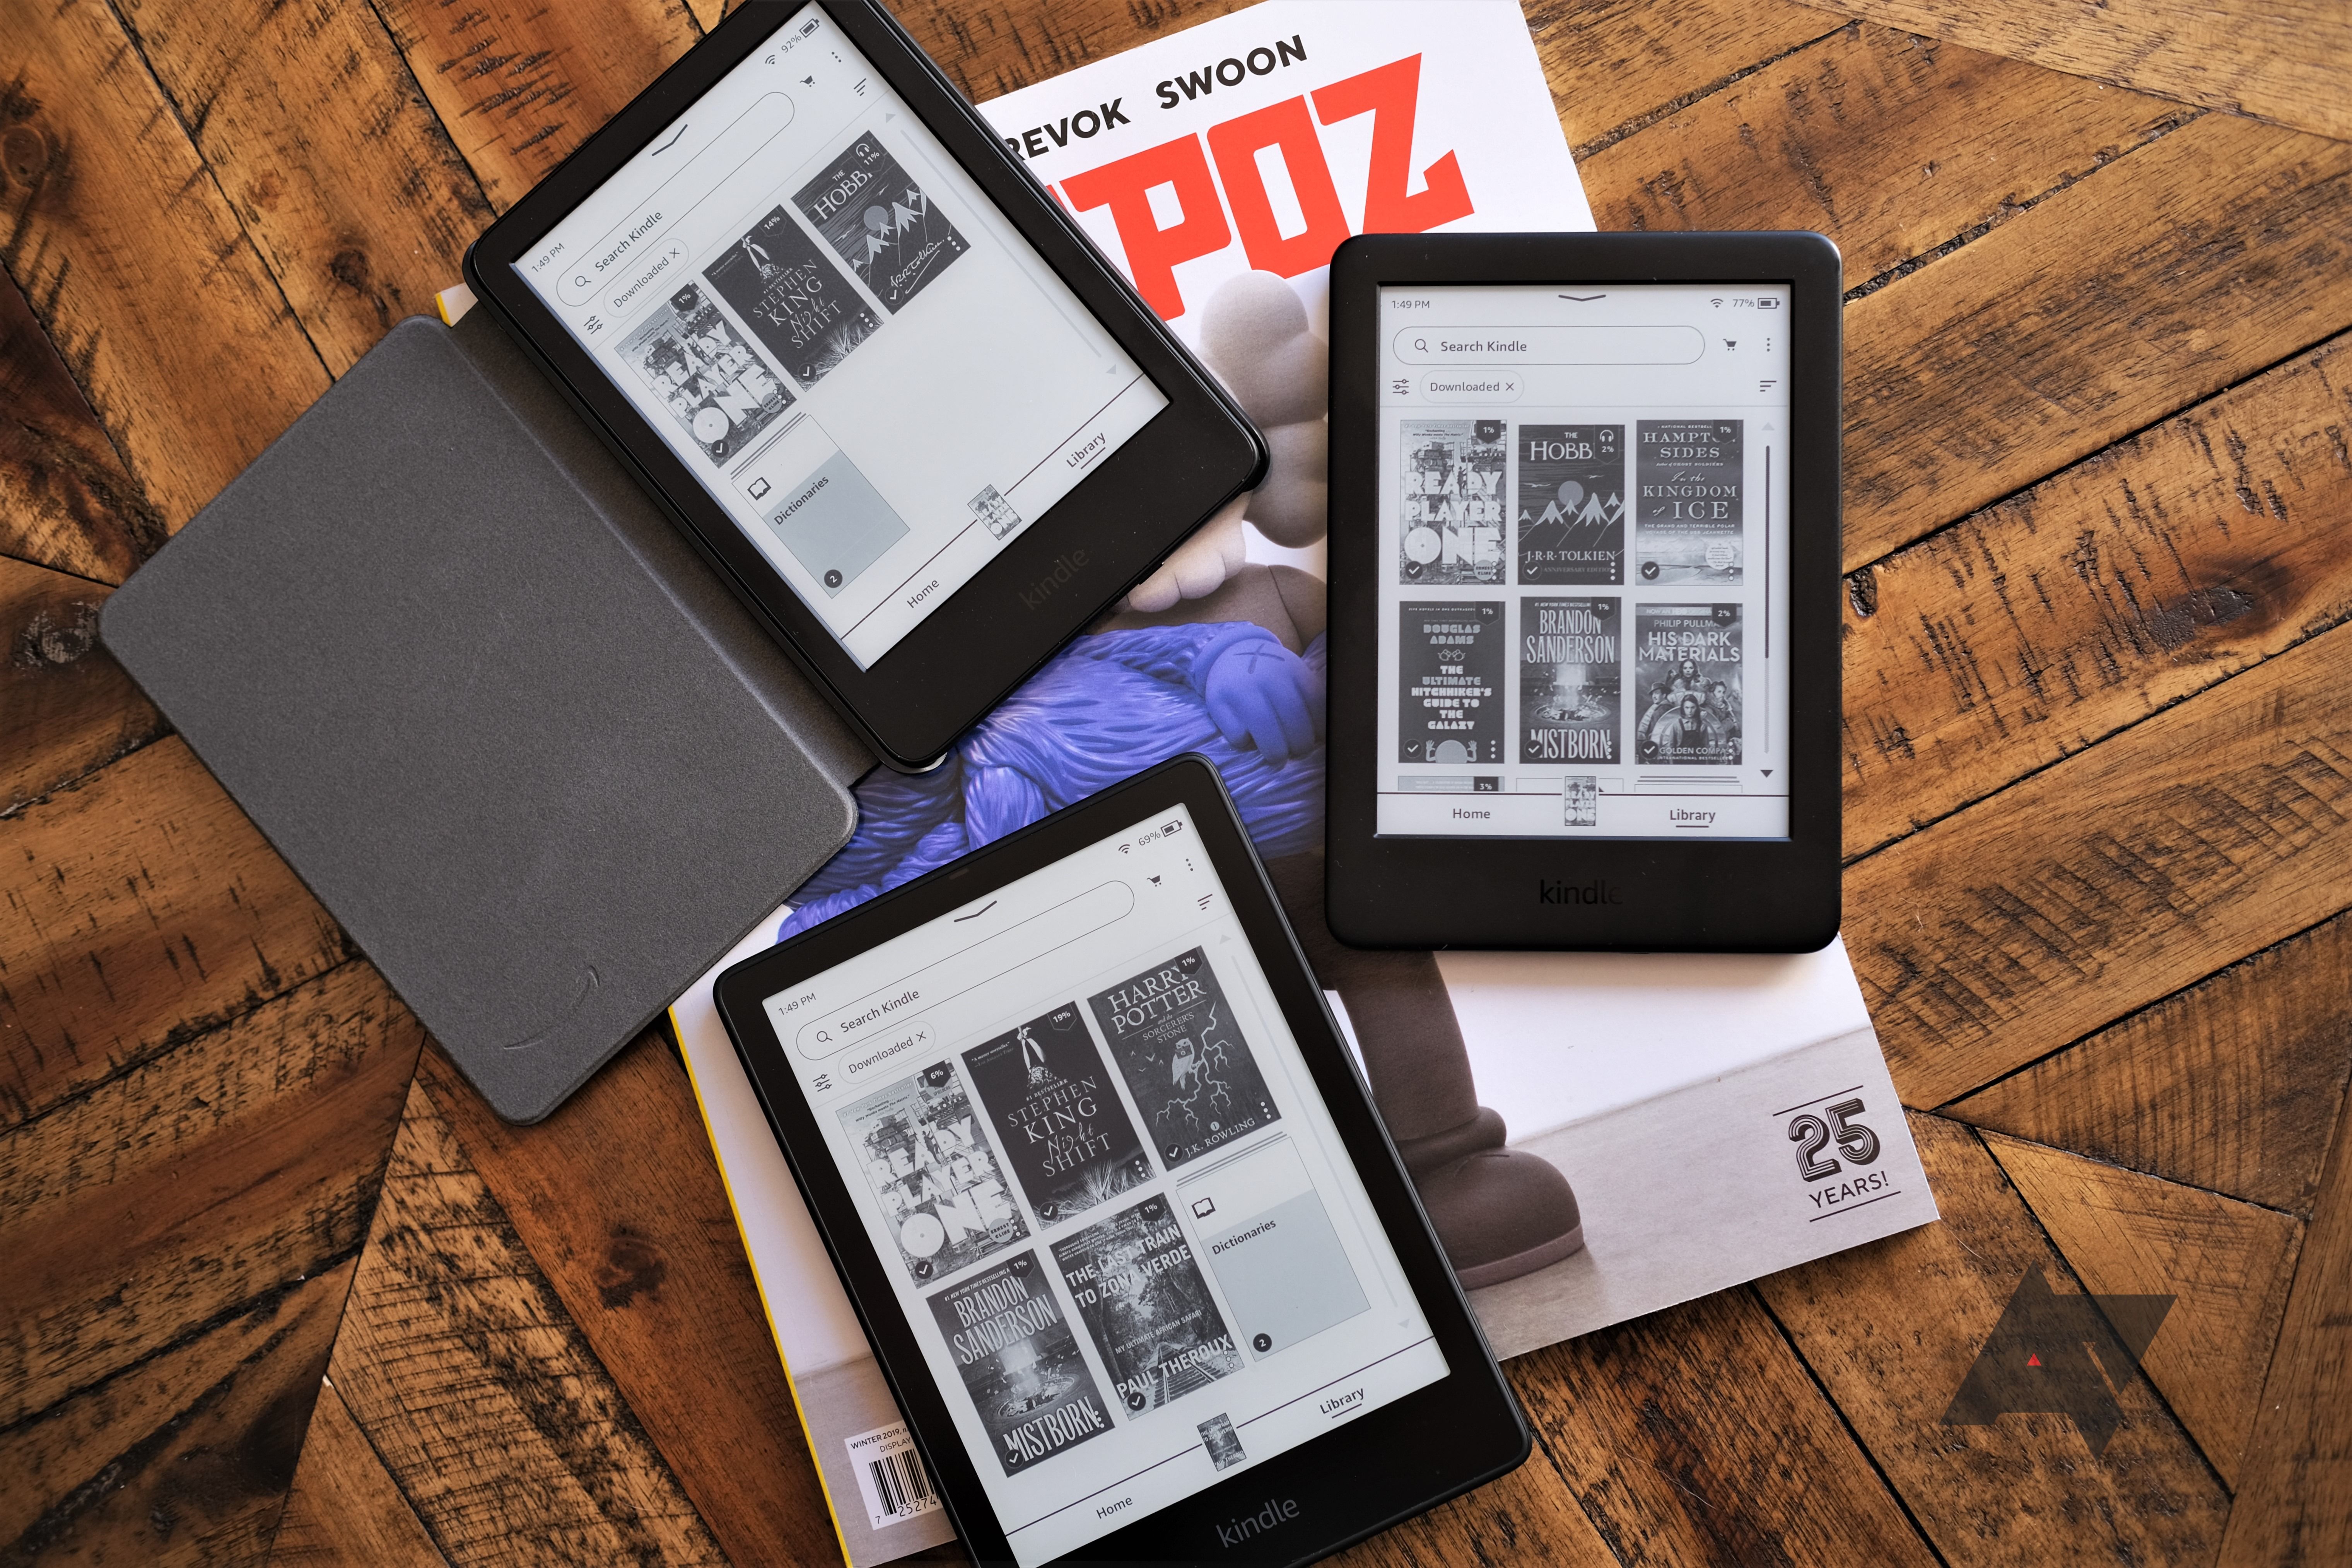 All-new Kindle review all-new kindle, kindle 2019, kindl epaperwhite signature ed